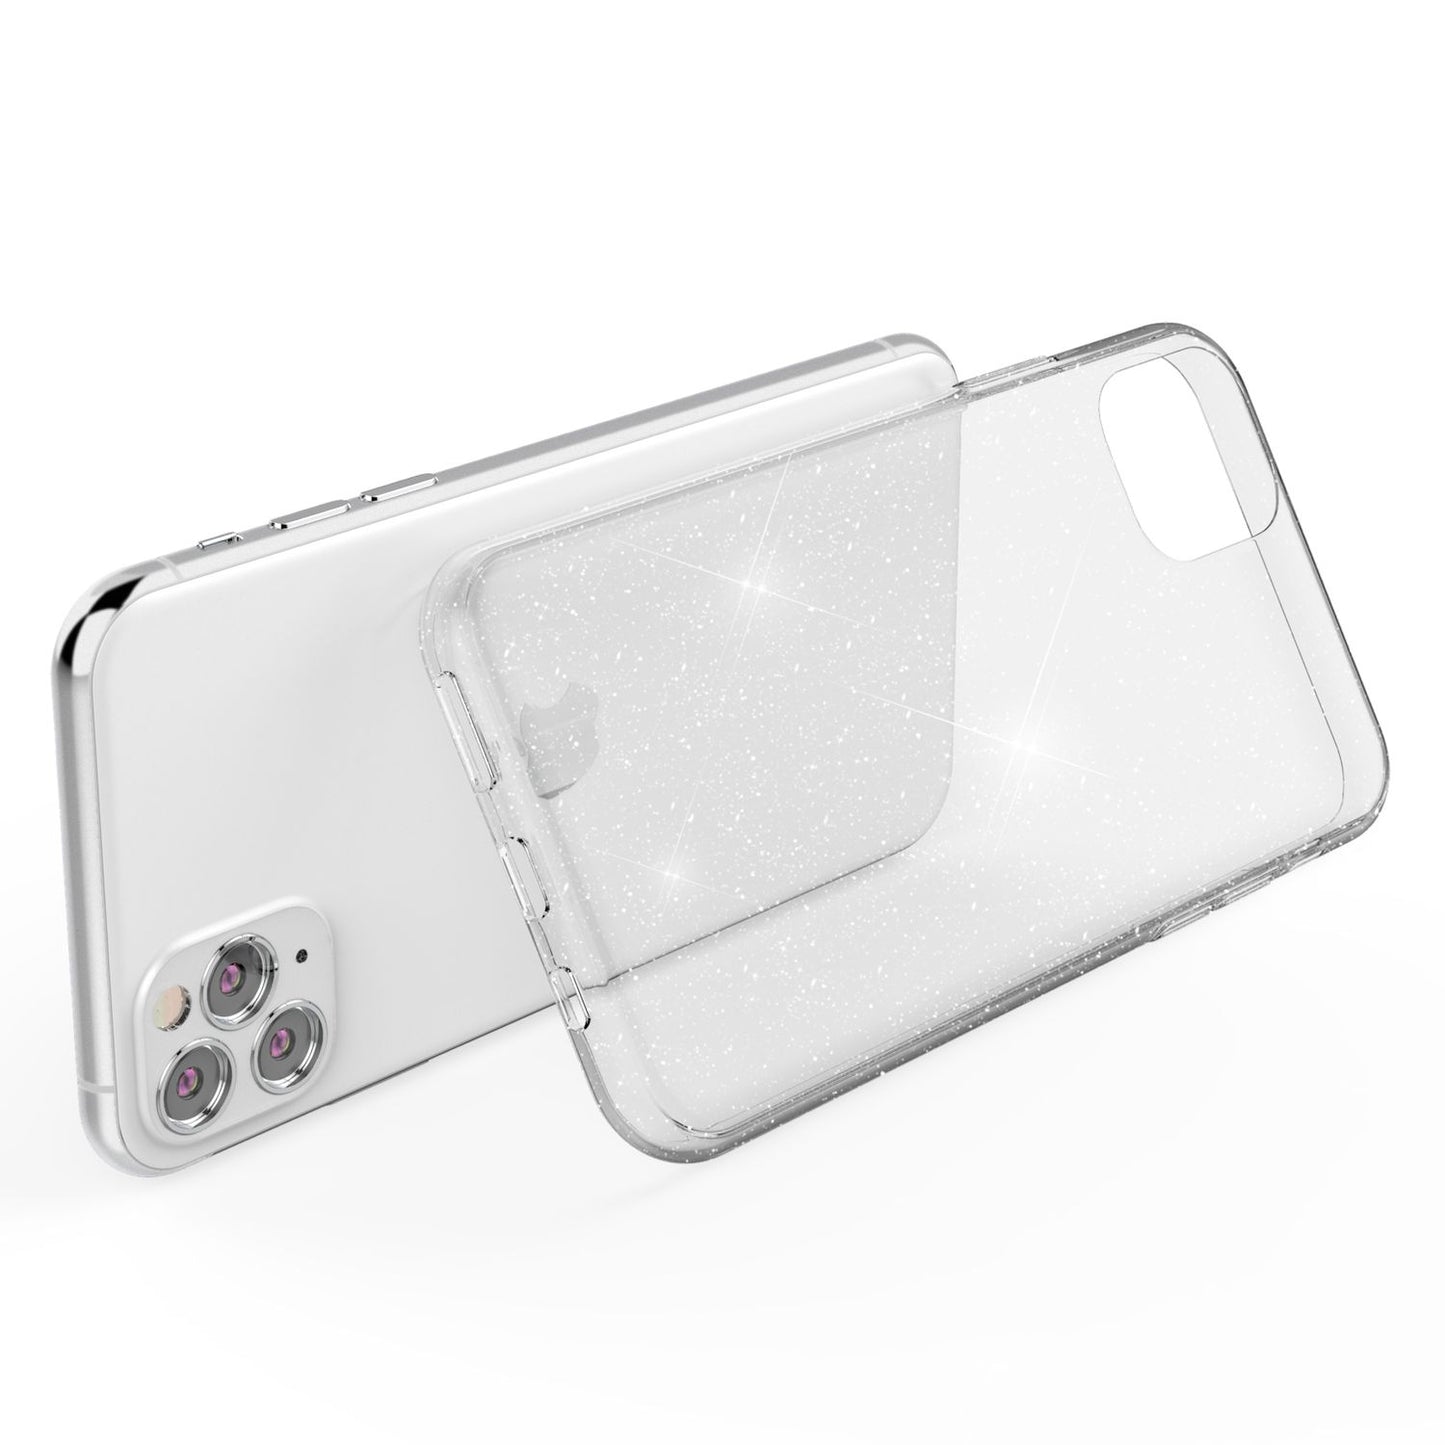 NALIA Glitzer Handy Hülle für iPhone 11 Pro, Schutz Case Cover Tasche Bumper